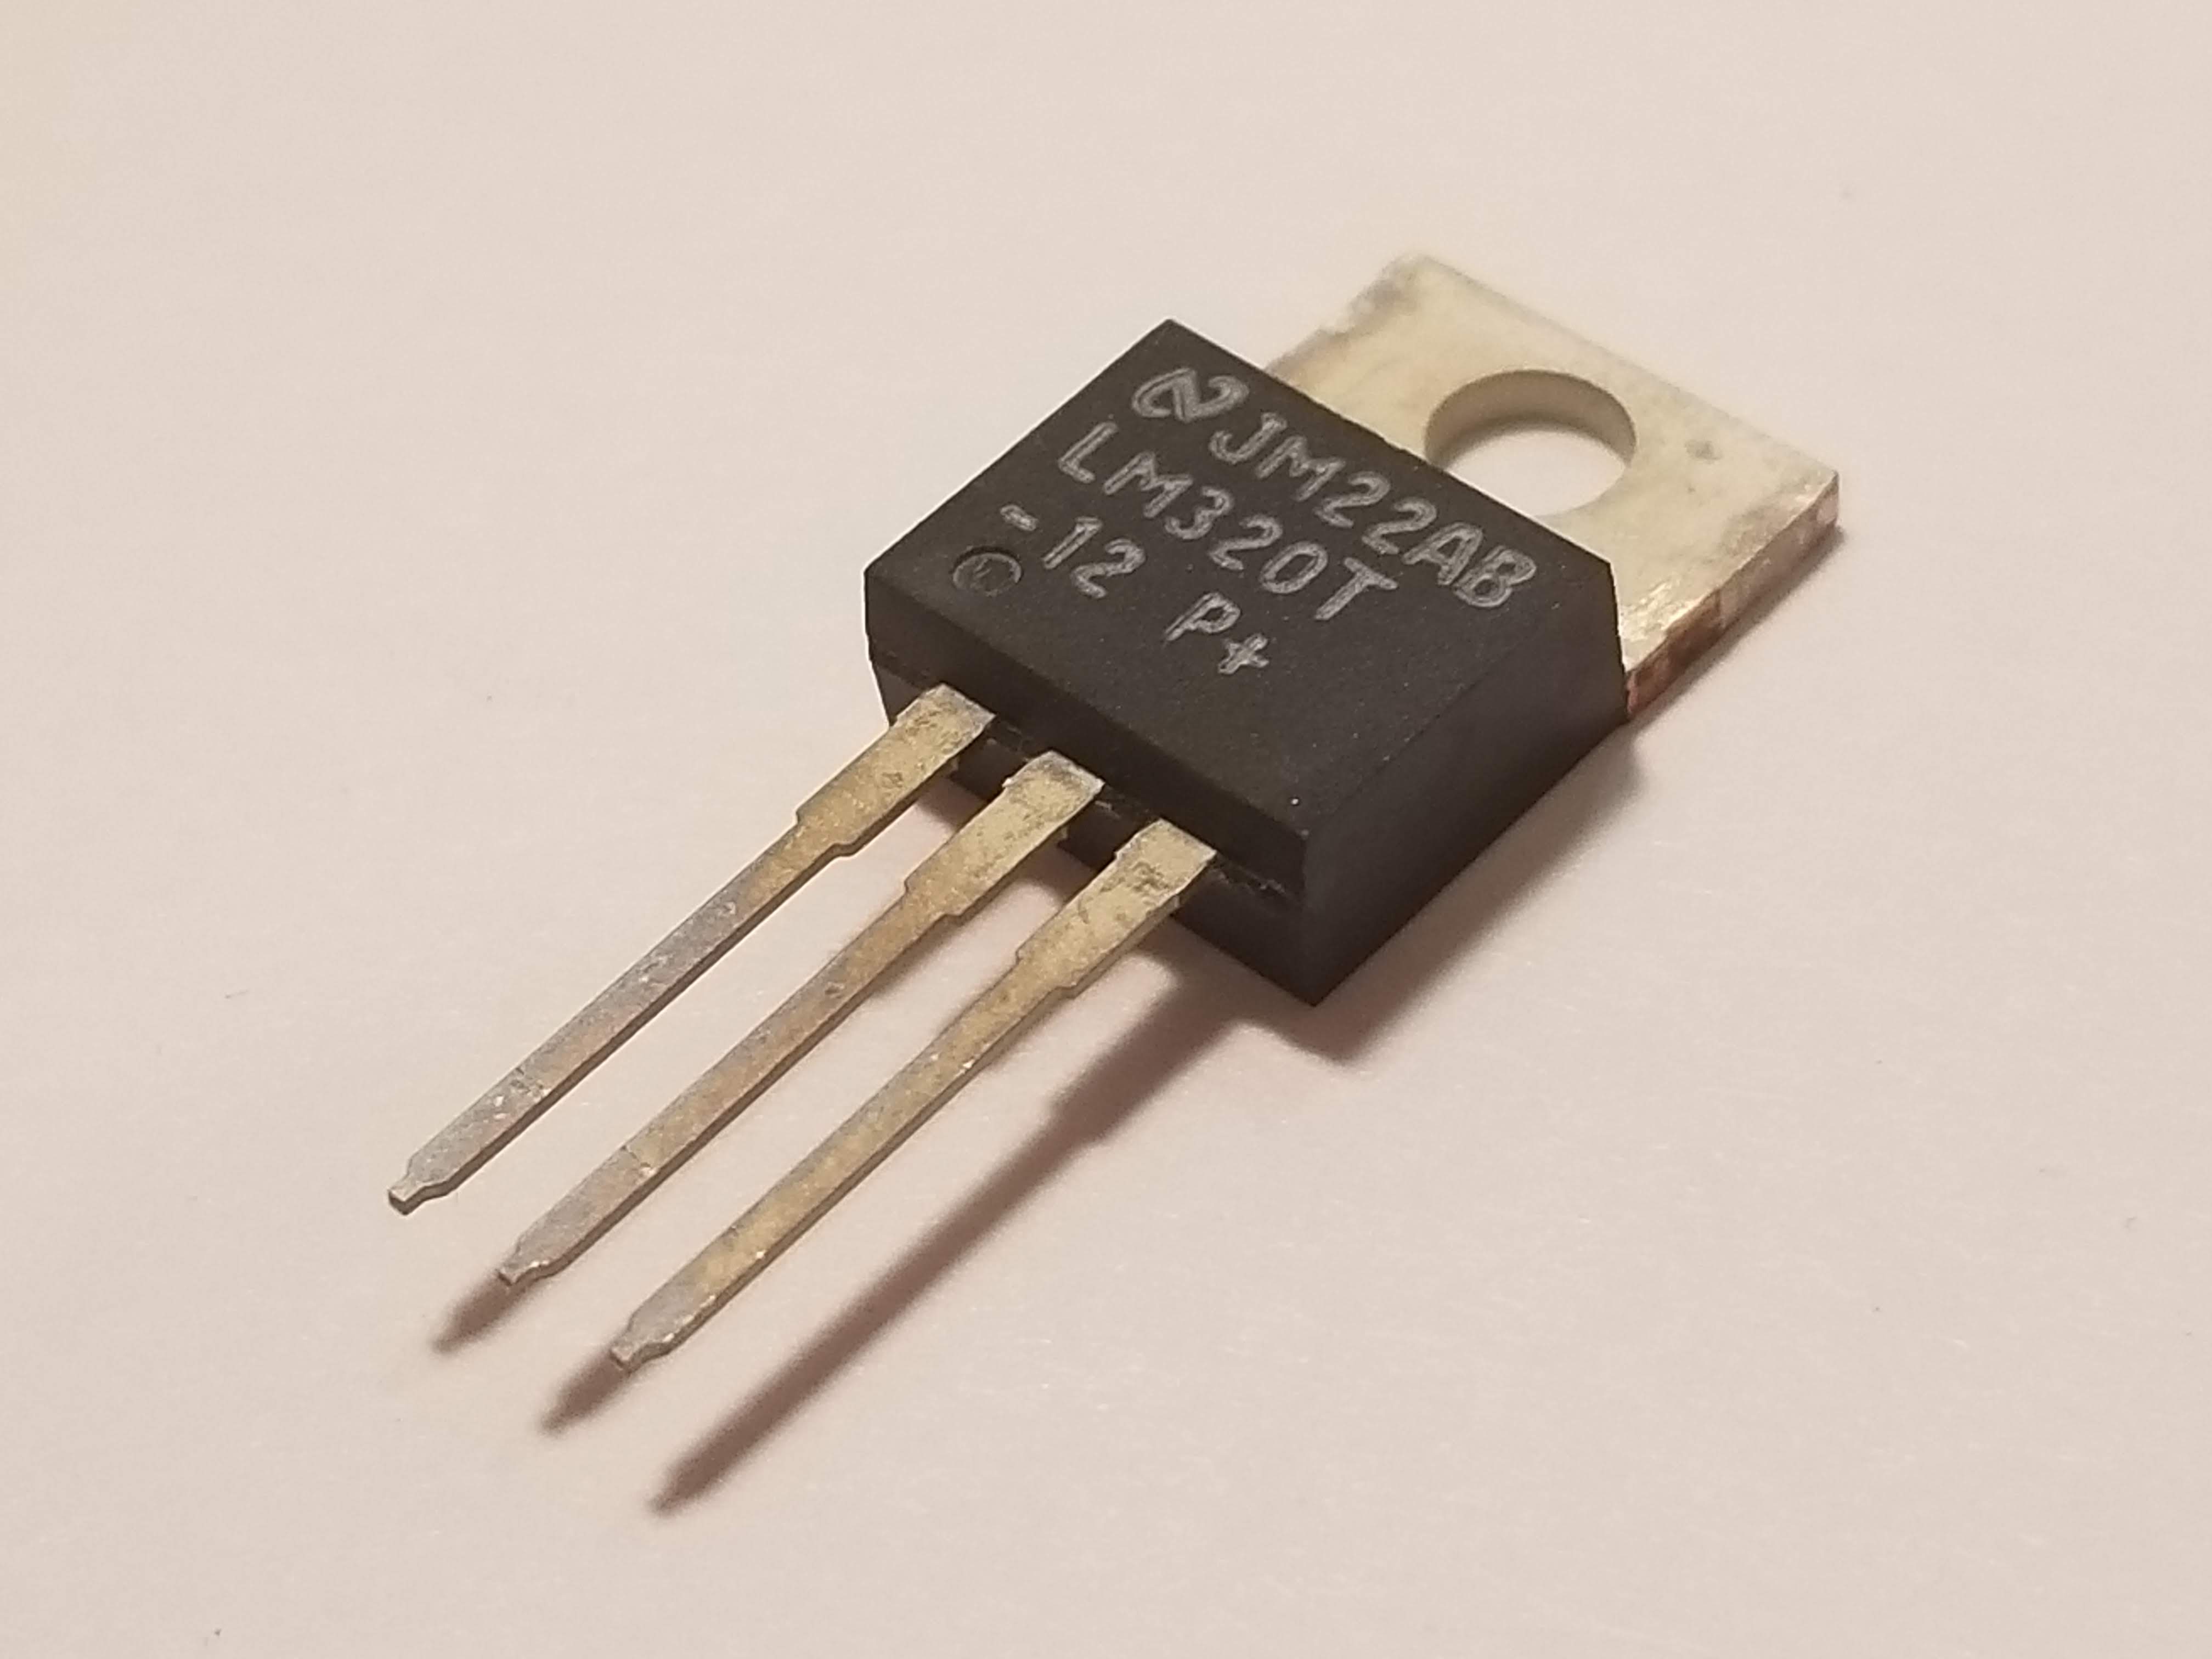 Picture of LM320-12 -12V Voltage Regulator